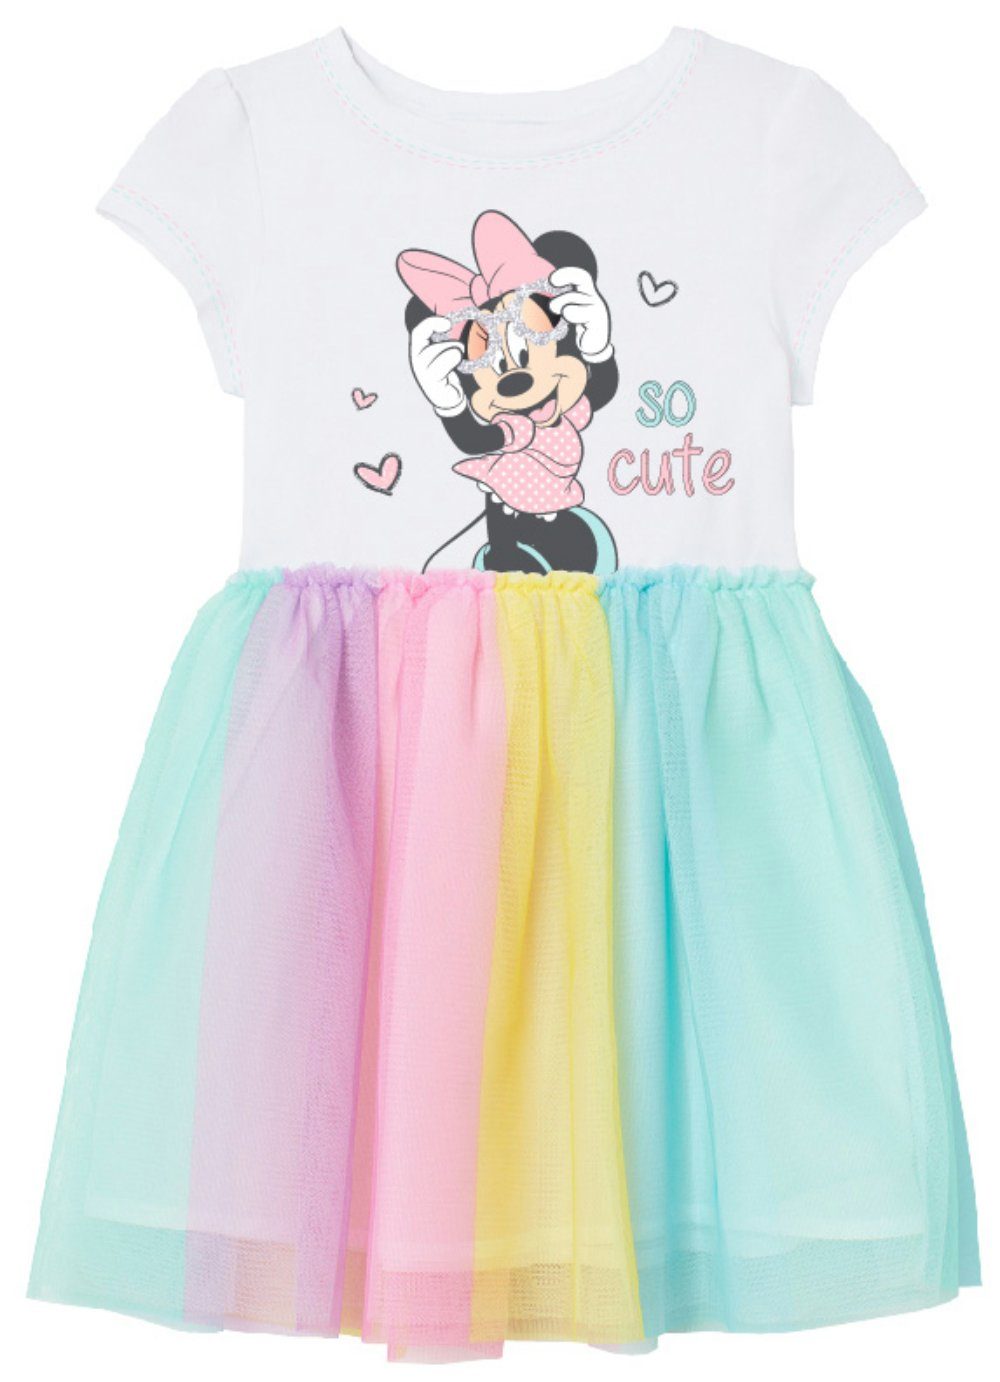 104 Minnie - Mouse Minnie Baumwolle Regenbogen Maus bis Gr. Kinder Disney Mädchen Kleid Tüllkleid 134,